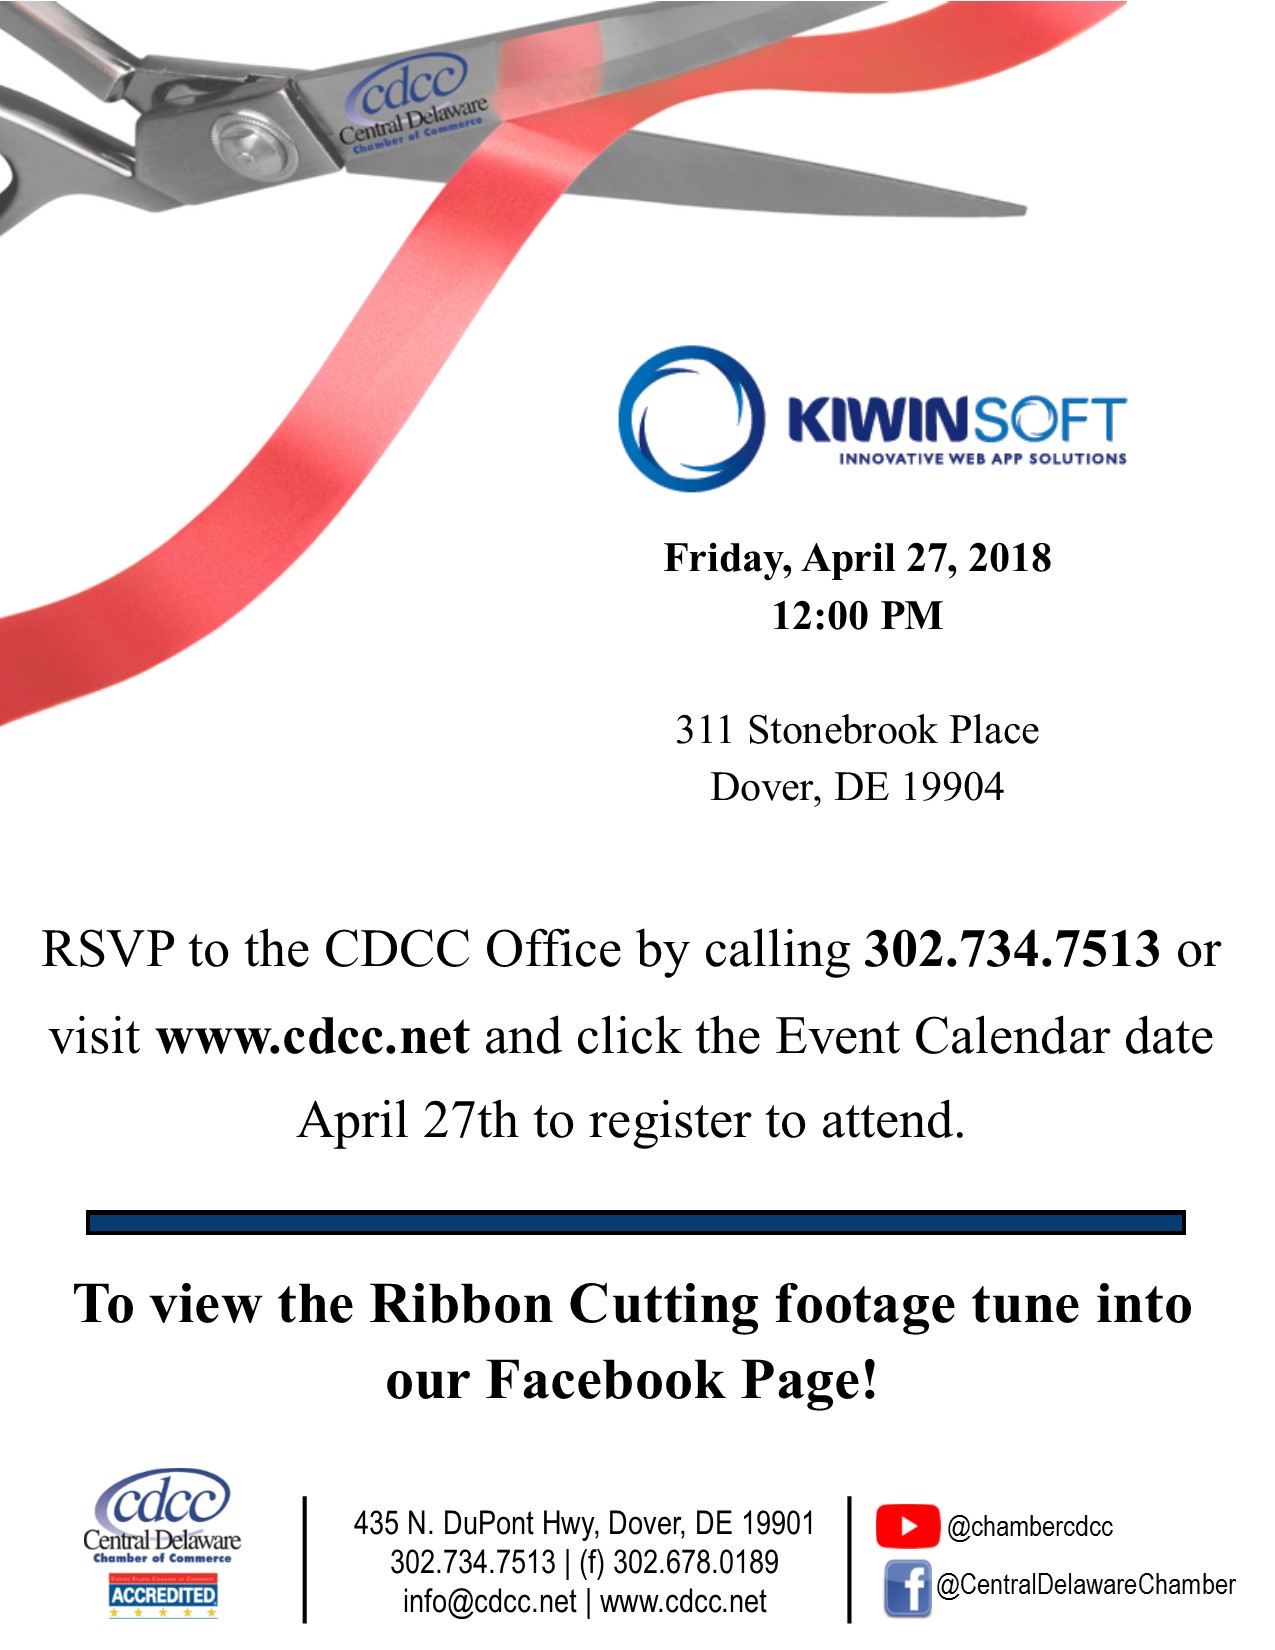 Ribbon Cutting - KIWINSOFT